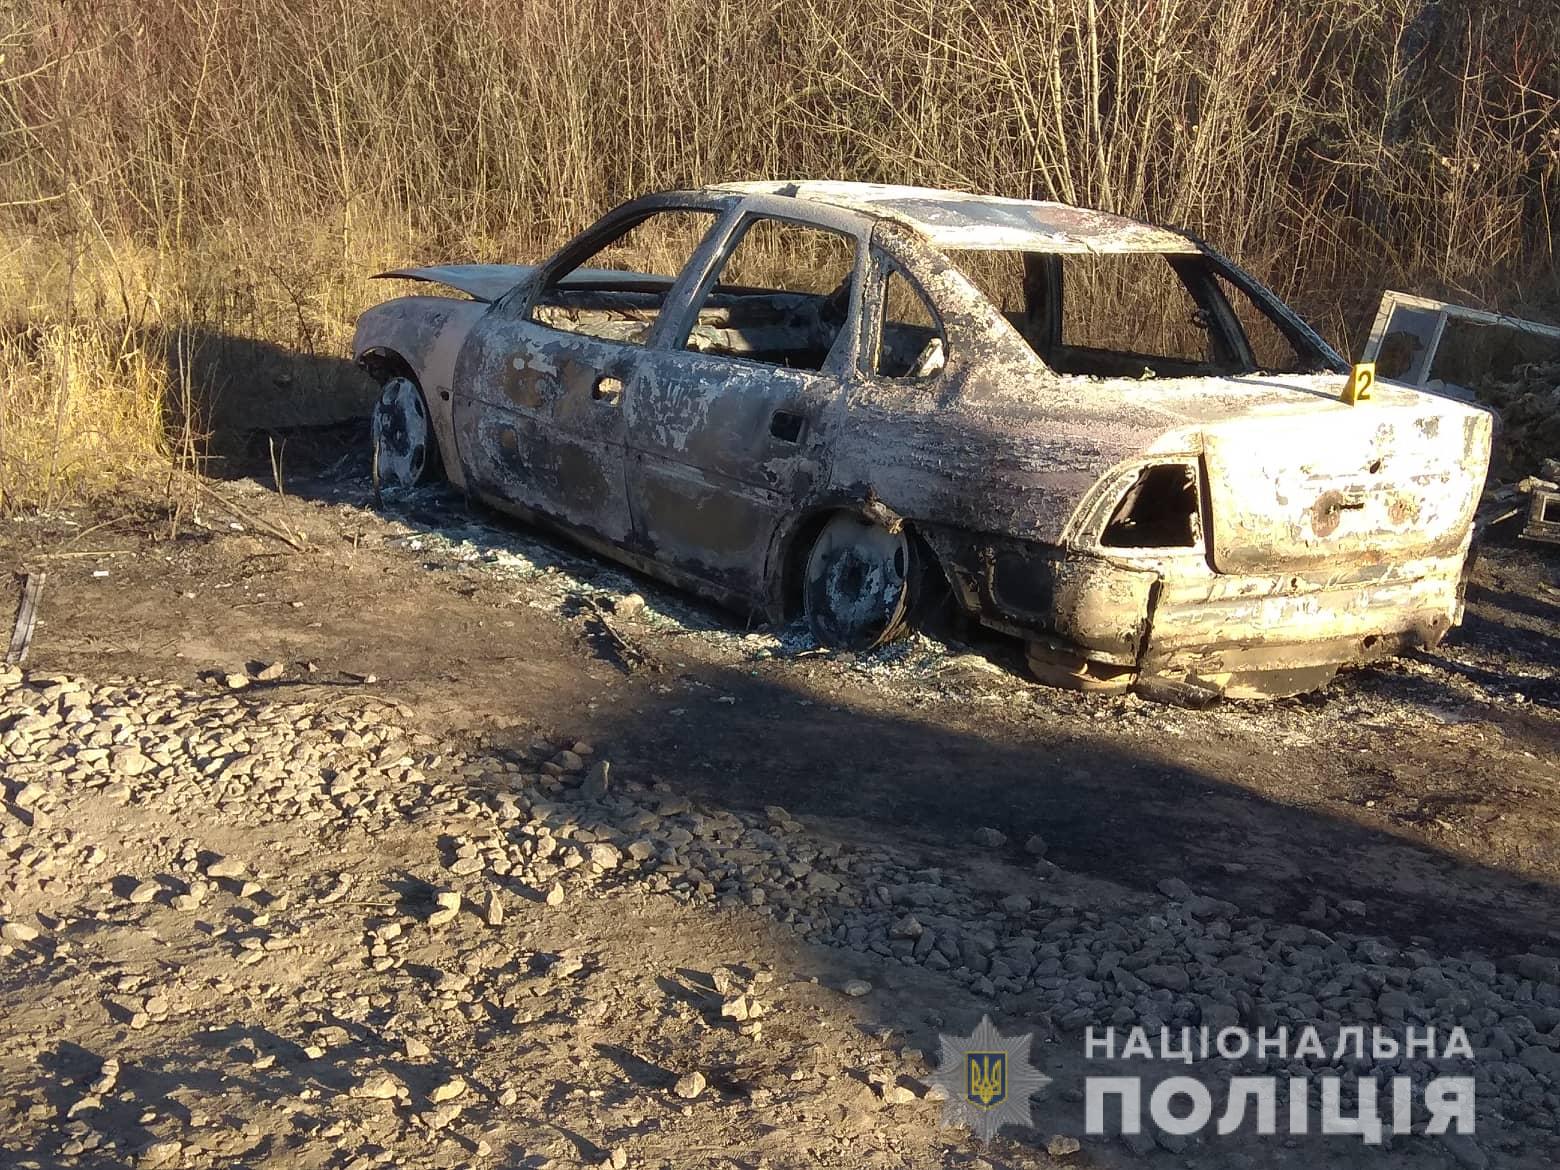 Полицейские нашли сгоревший автомобиль подрывников с ул. Чайковского (фото)